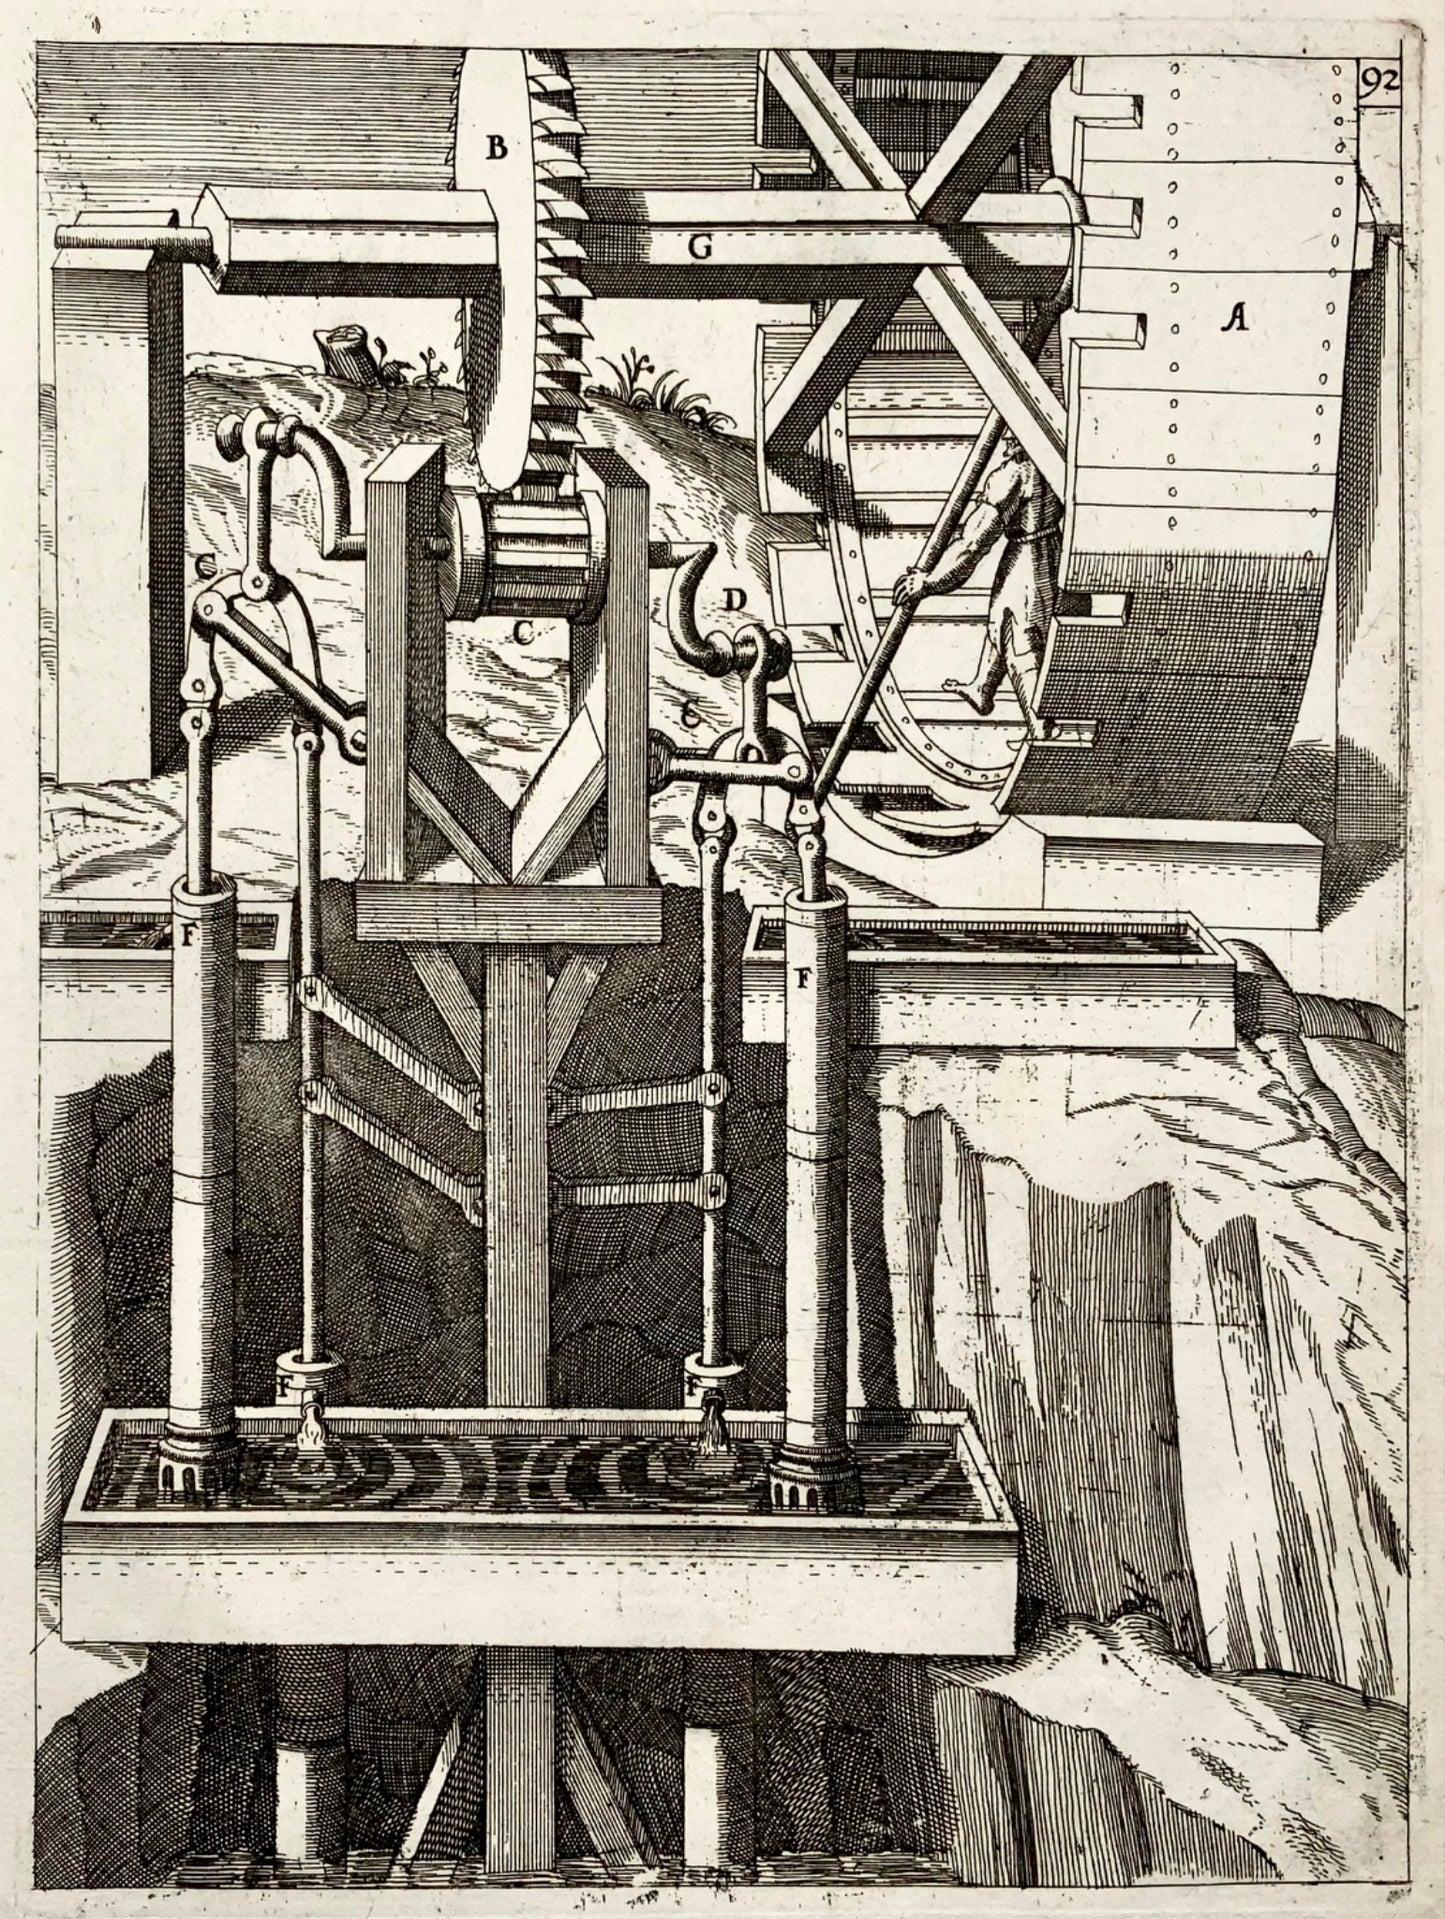 1662 Balth. Schwan ; Boeckler, pompe à piston, machine à élever l'eau, technologie